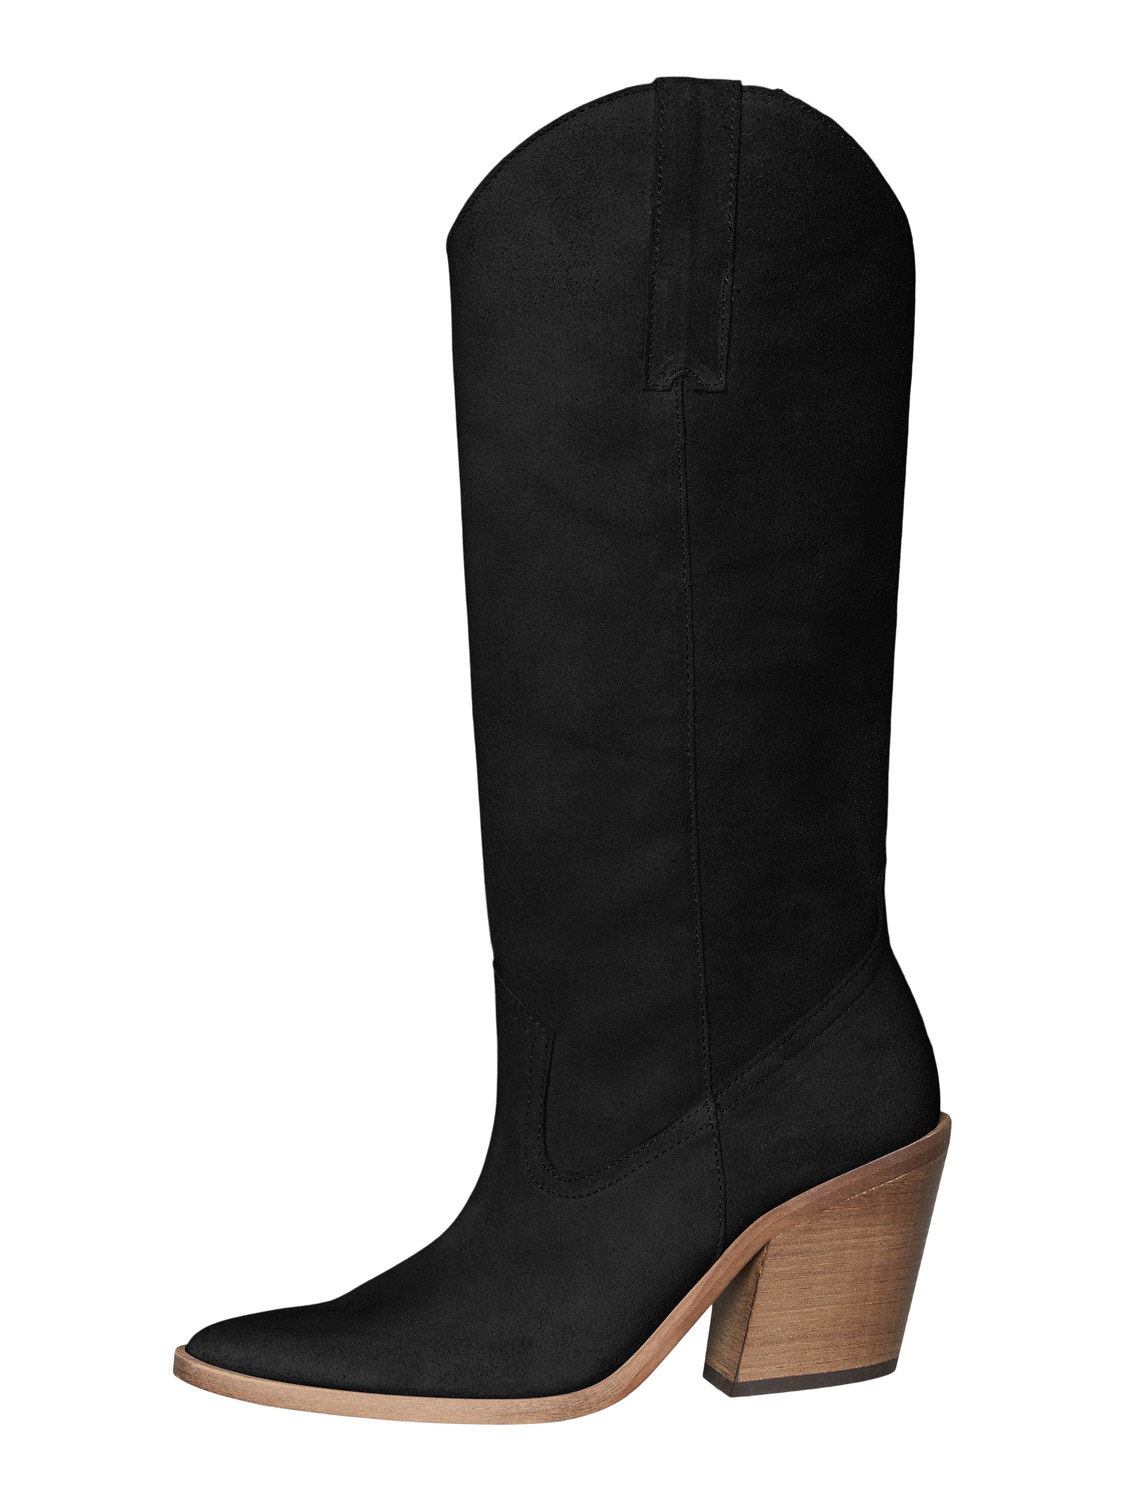 Vero Moda Boots -Black - 10299912